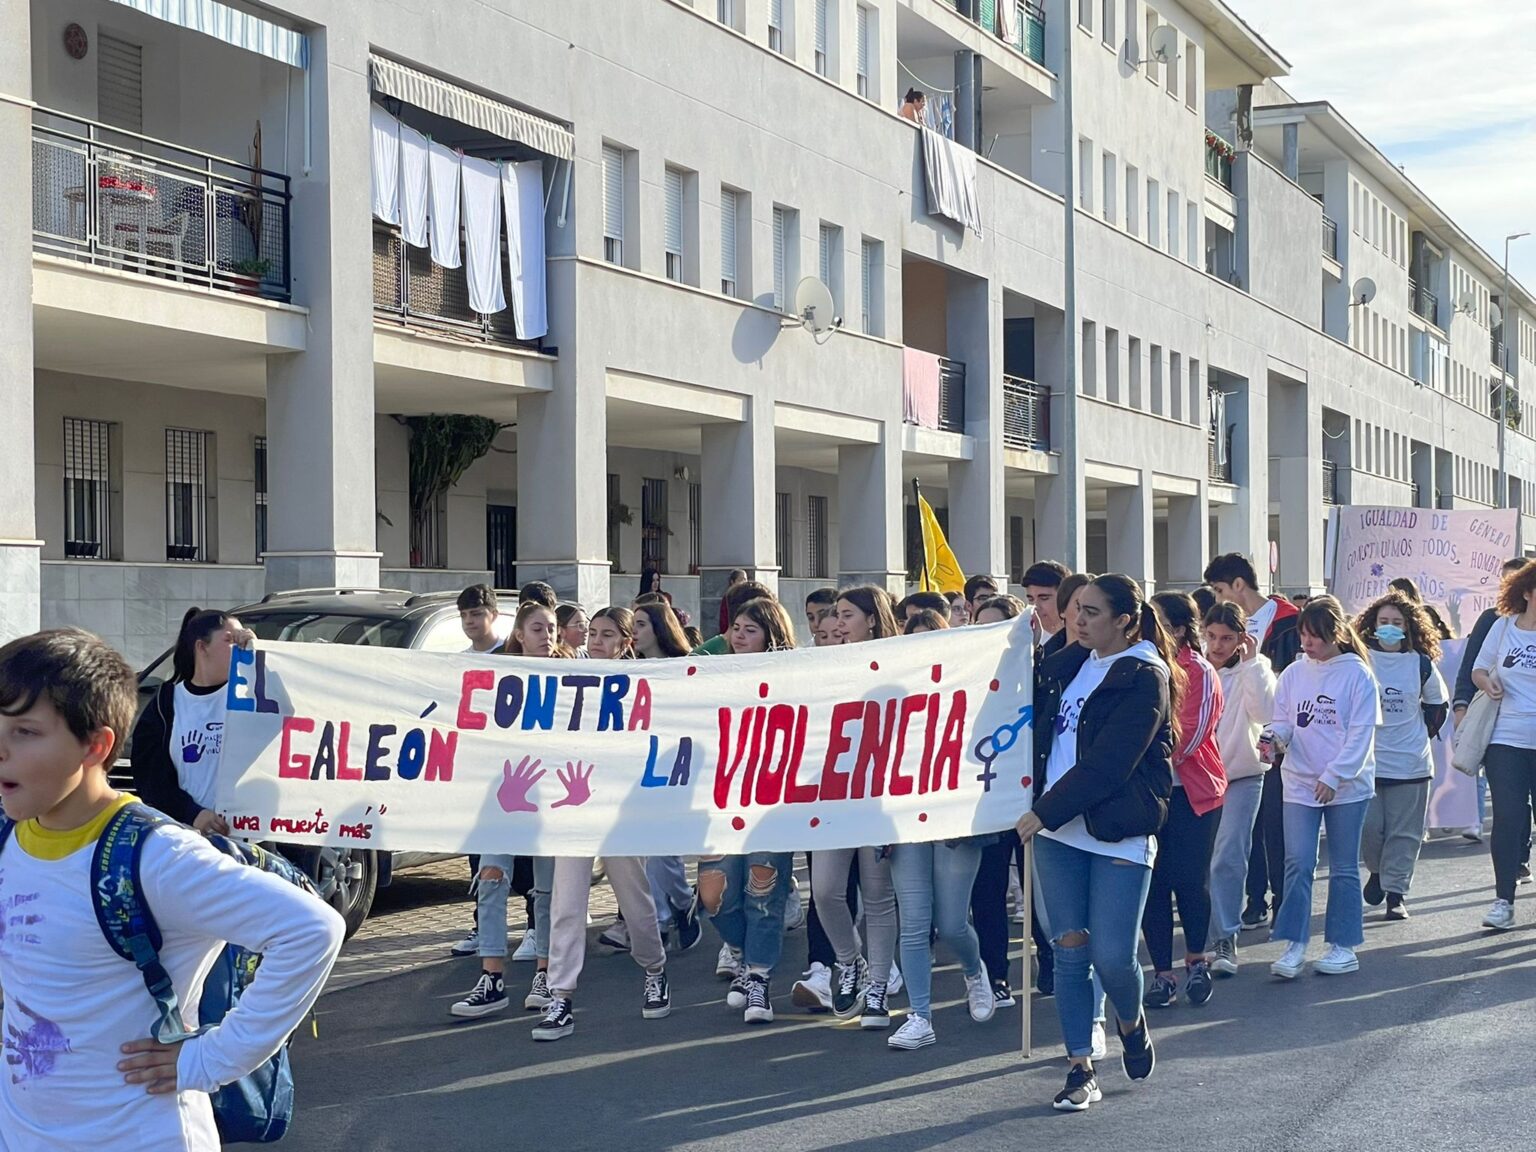 El Ayuntamiento de Isla Cristina celebra el Acto Central del 25N implicando la Comunidad Educativa